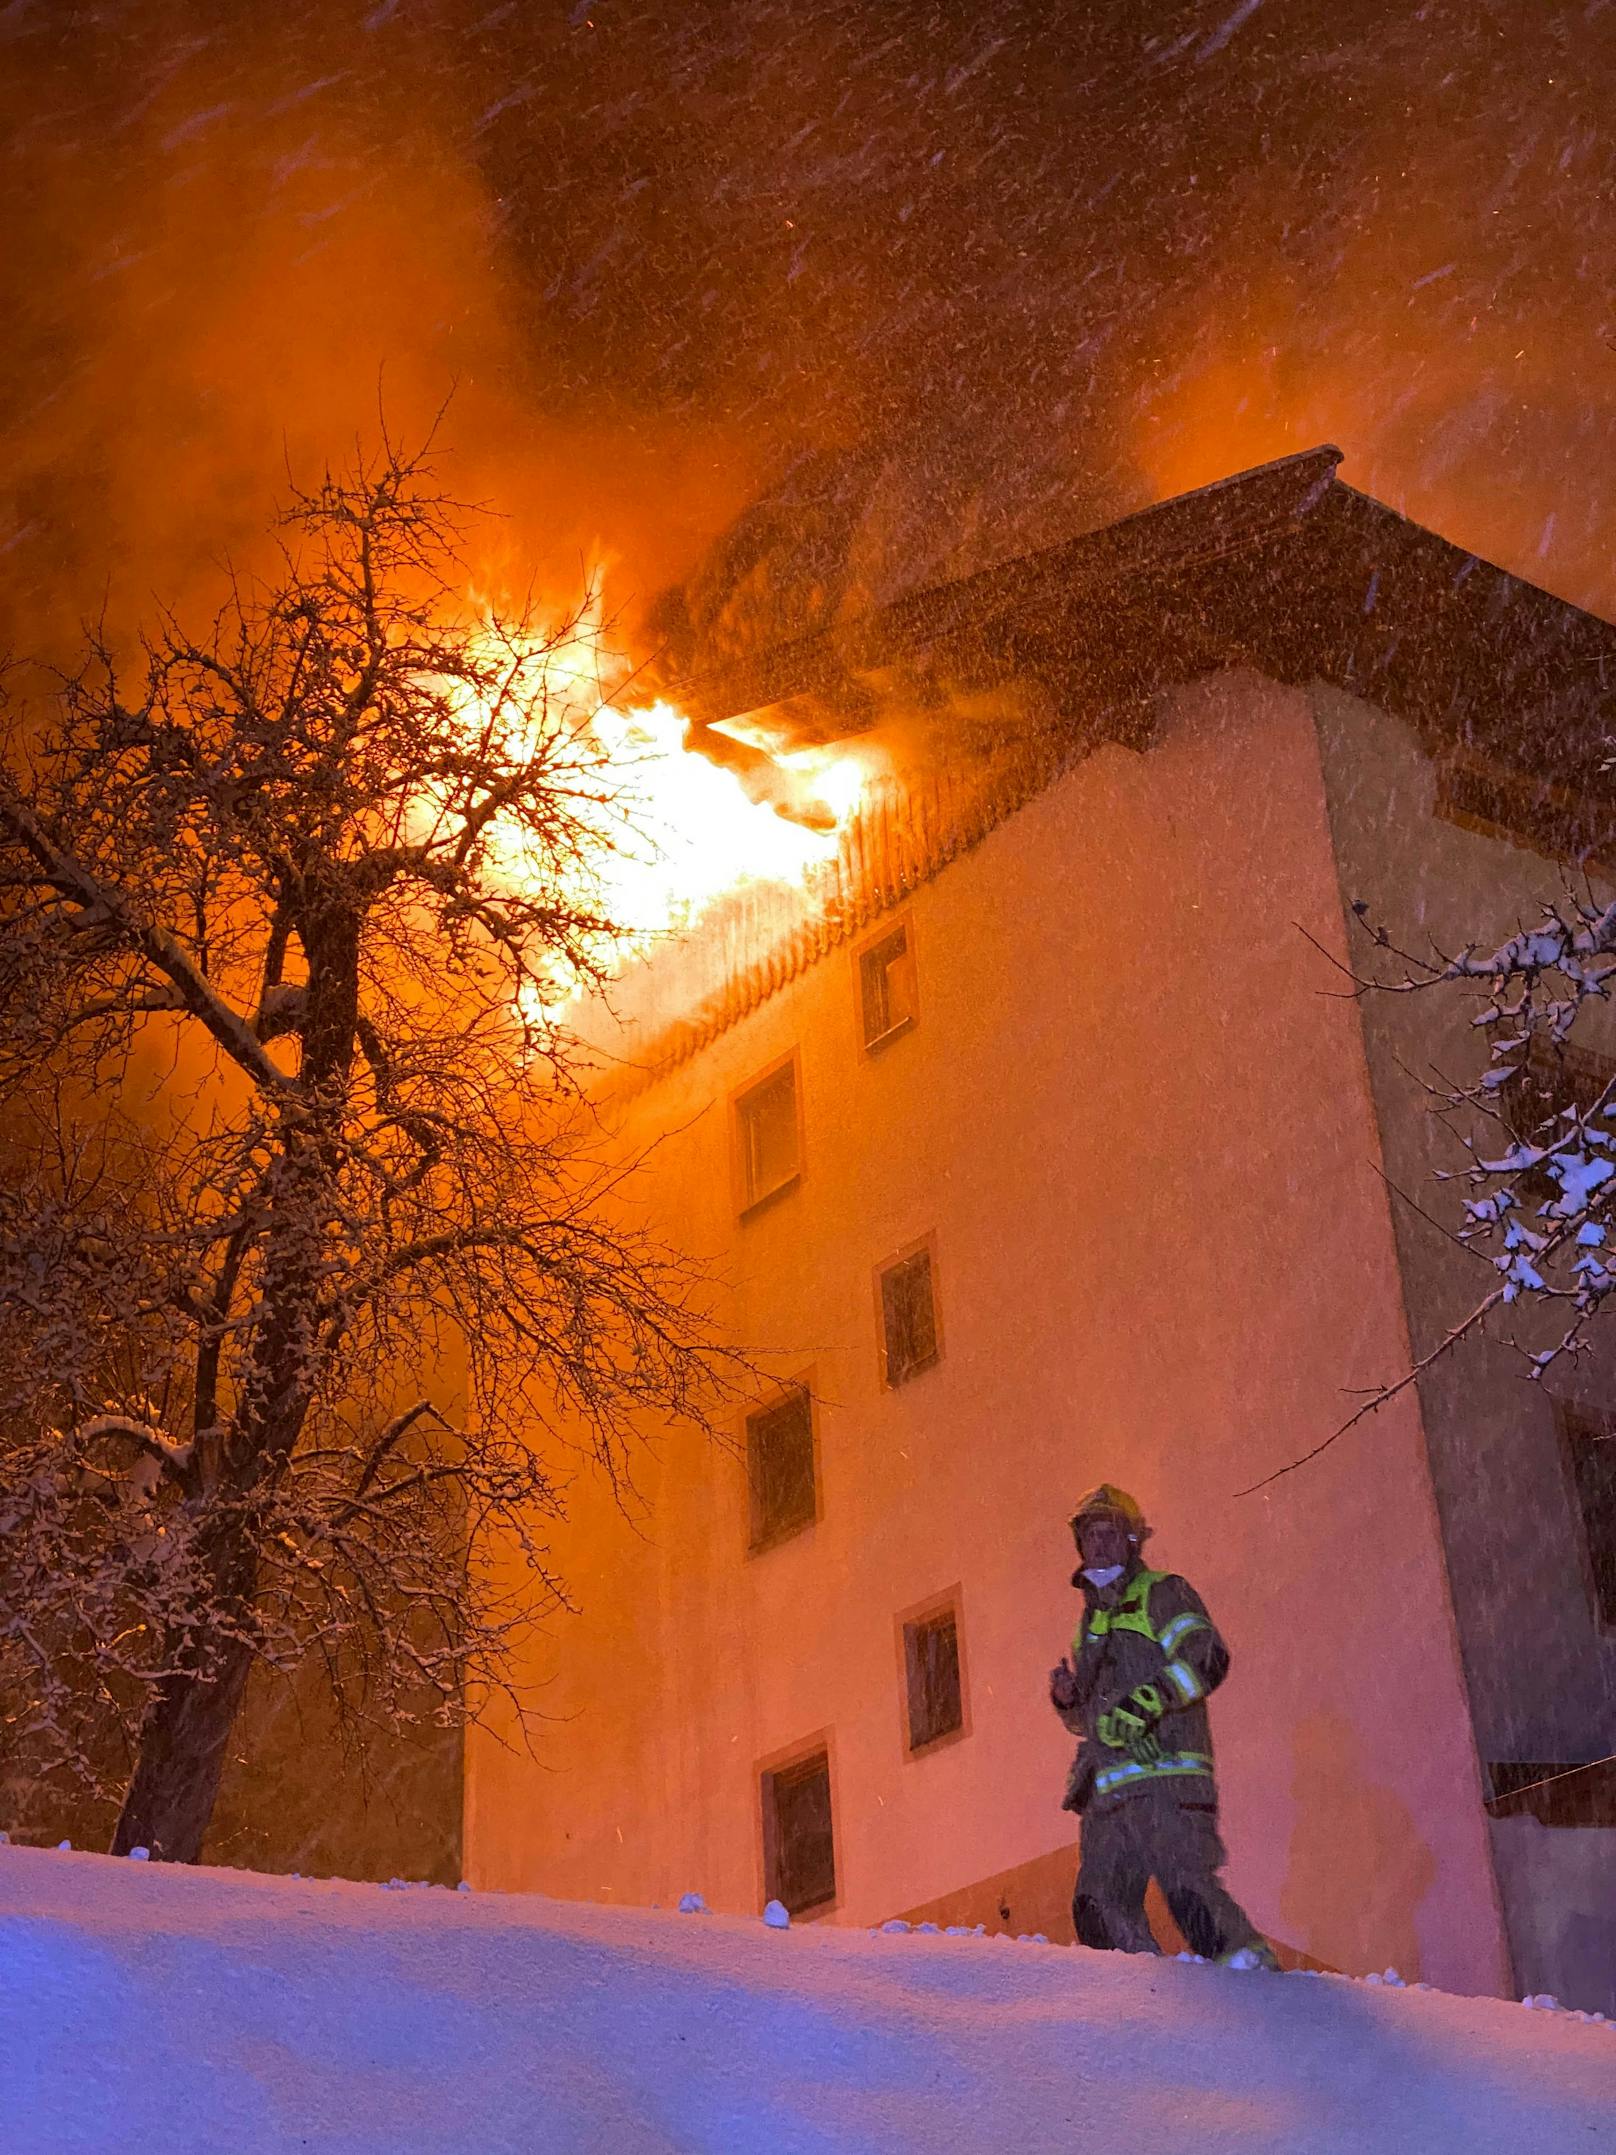 Das Feuer im Dachgeschoss des circa 300 Jahre alten Bauernhauses in Bruck am Ziller breitet sich rasch aus. Die Feuerwehr stand im Großeinsatz. 